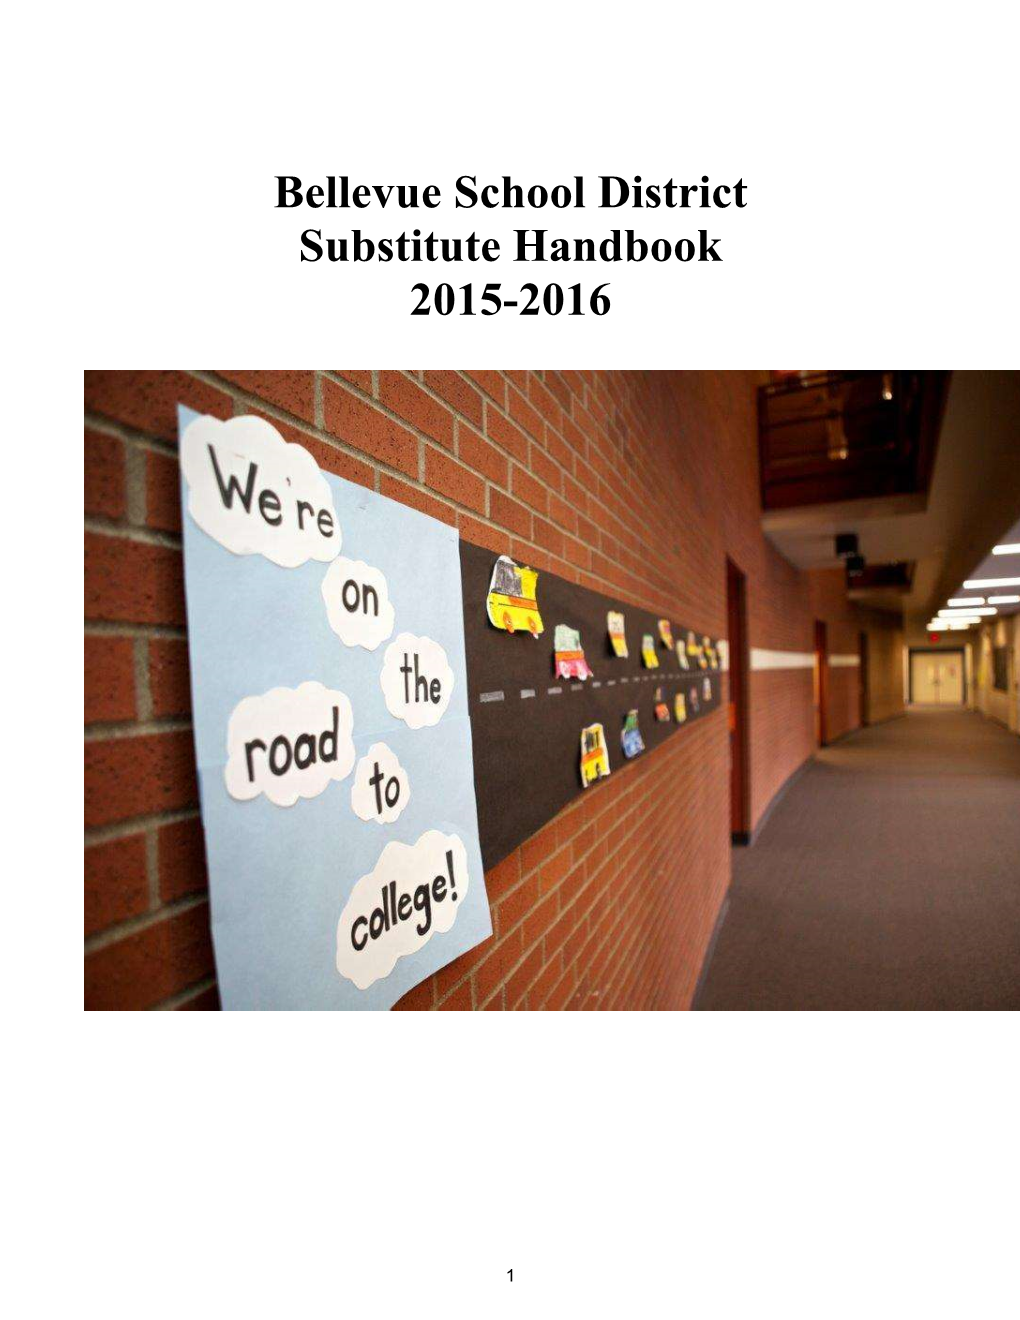 Bellevue School District Substitute Handbook 2015-2016